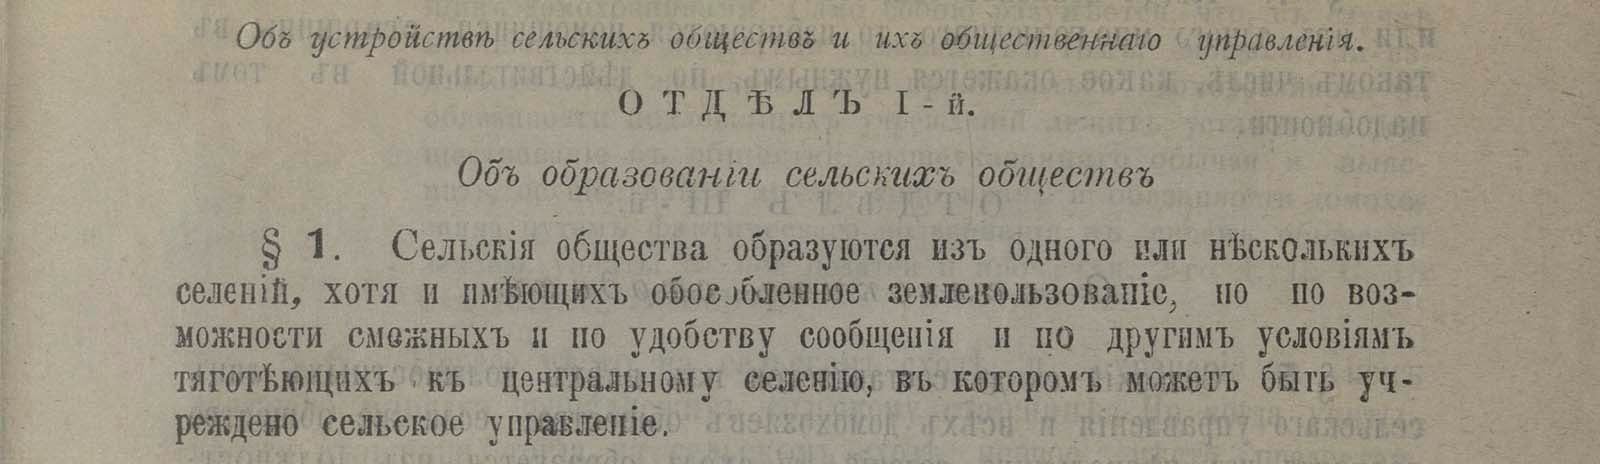 Фоновое изображение Законы и правила о крестьянах и переселенцах Якутской области